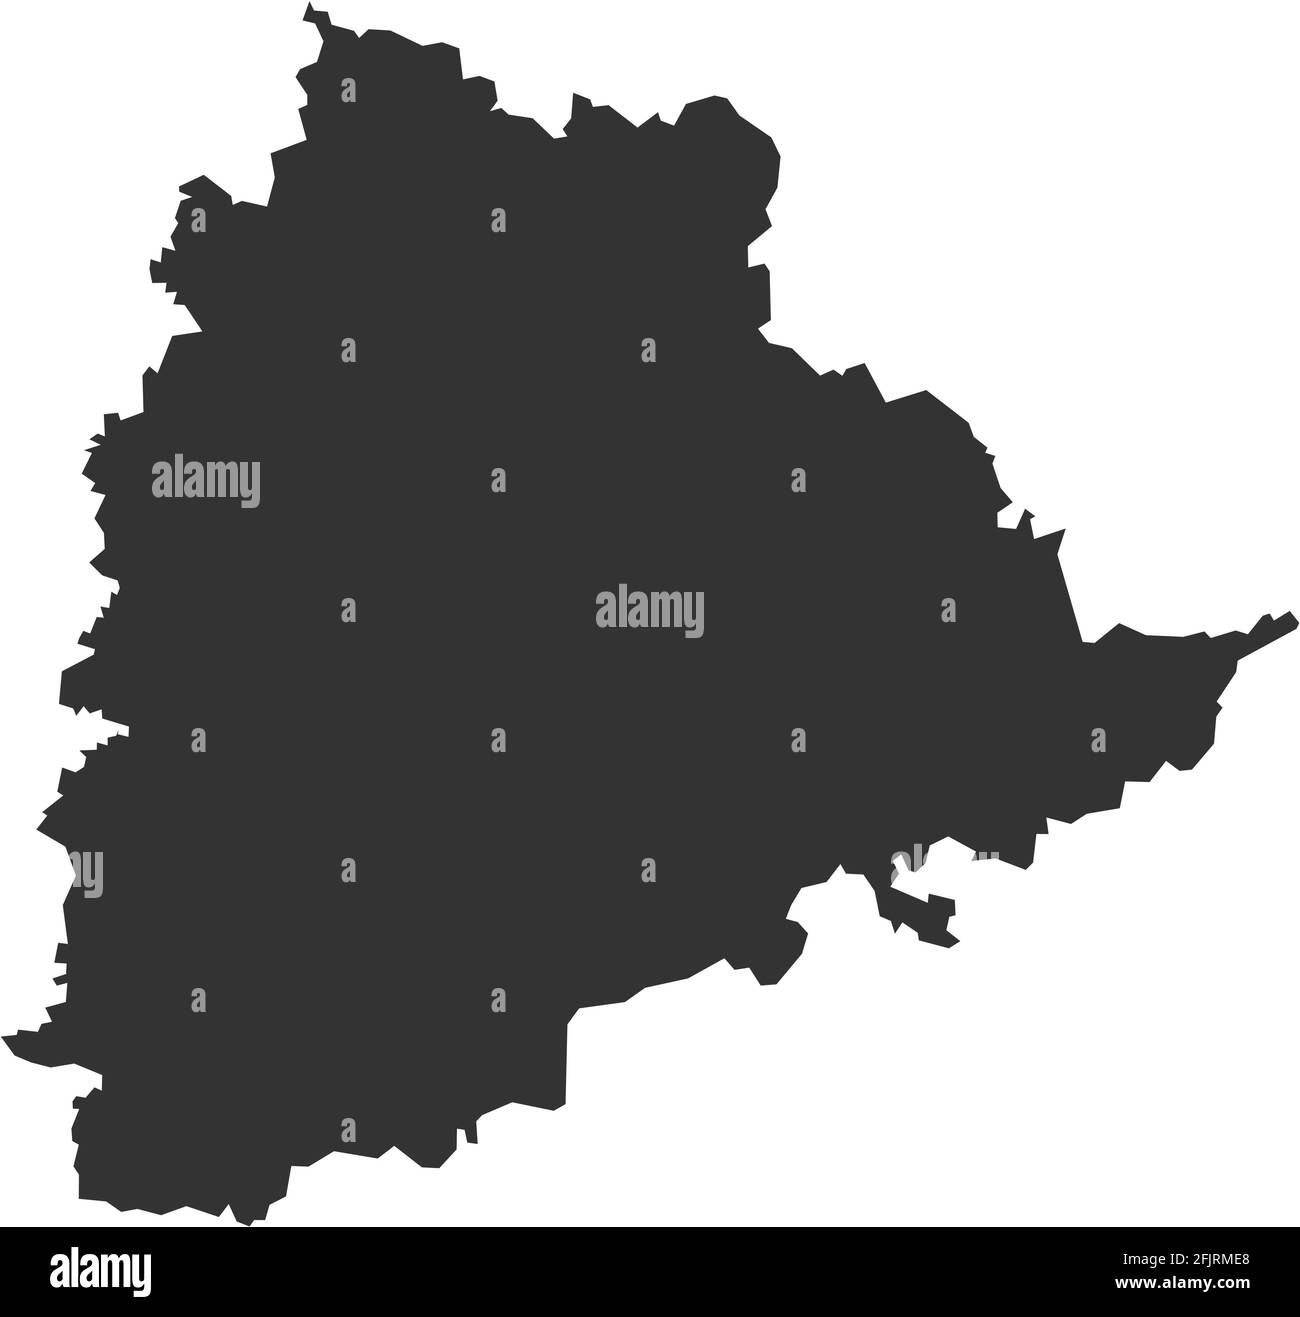 Mappa dello stato indiano di Telangana. Sfondo grigio scuro. Concetti aziendali e background geografici. Illustrazione Vettoriale